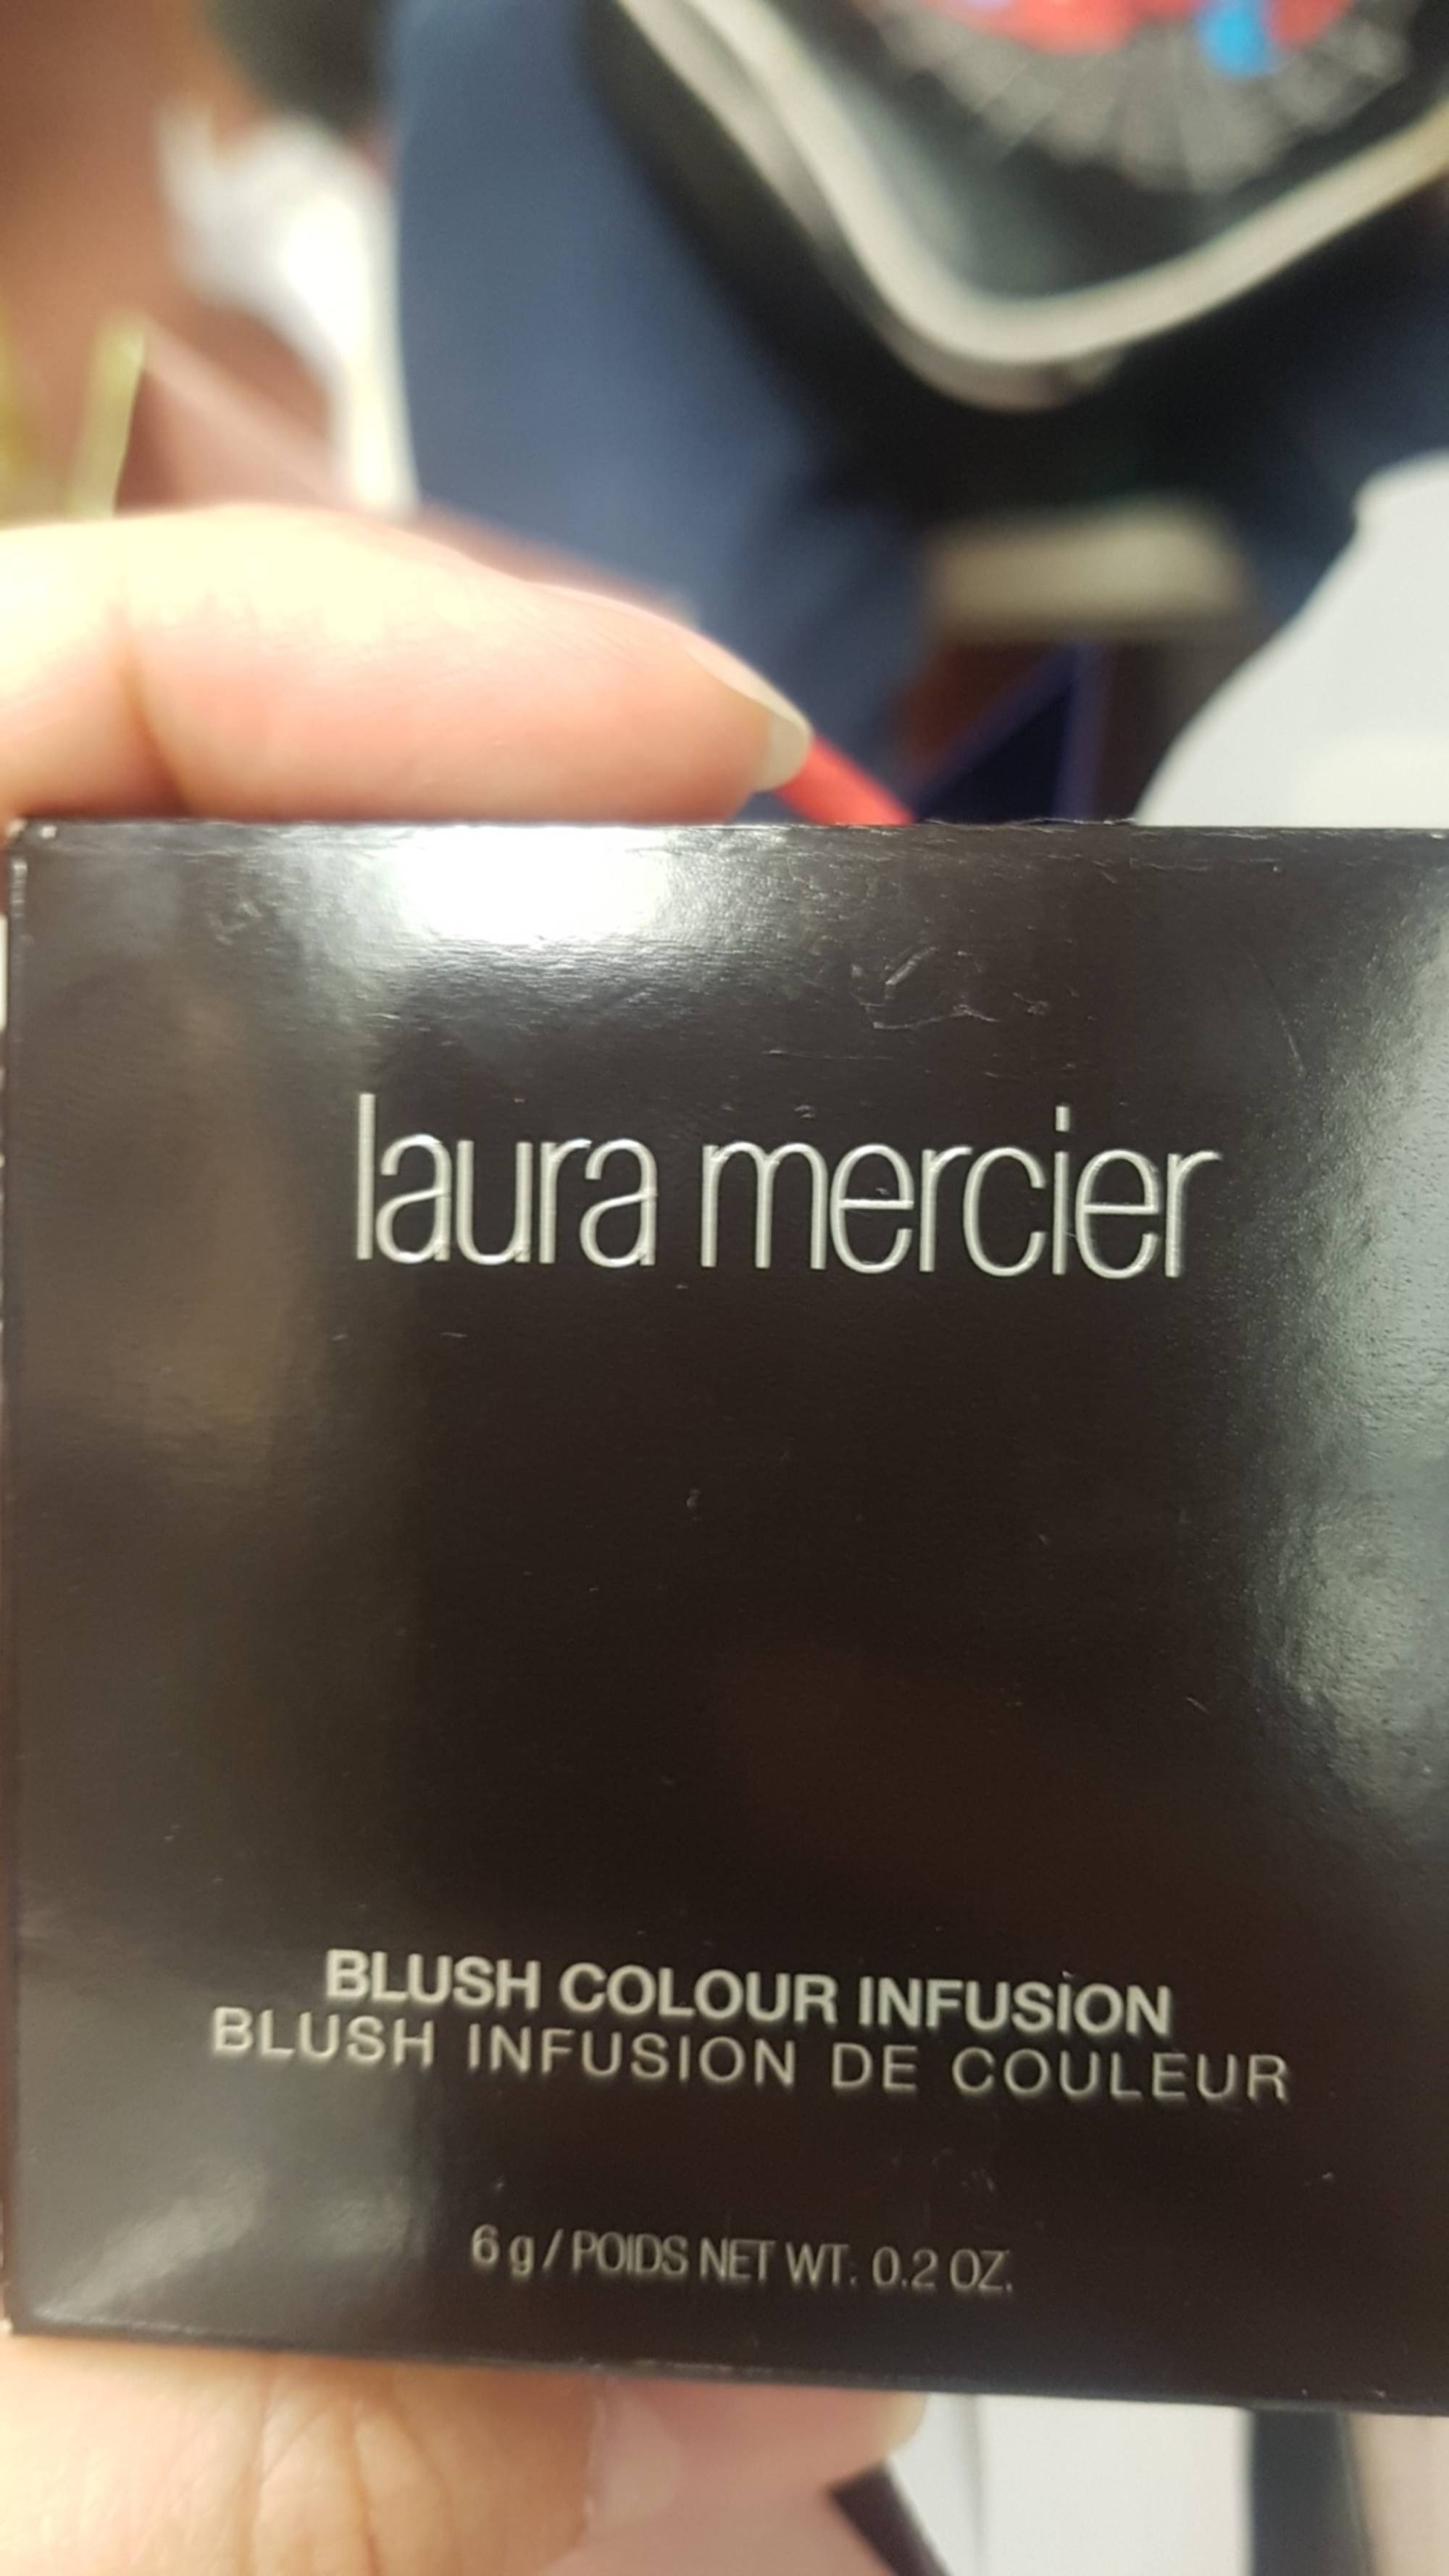 LAURA MERCIER - Blush infusion de couleur